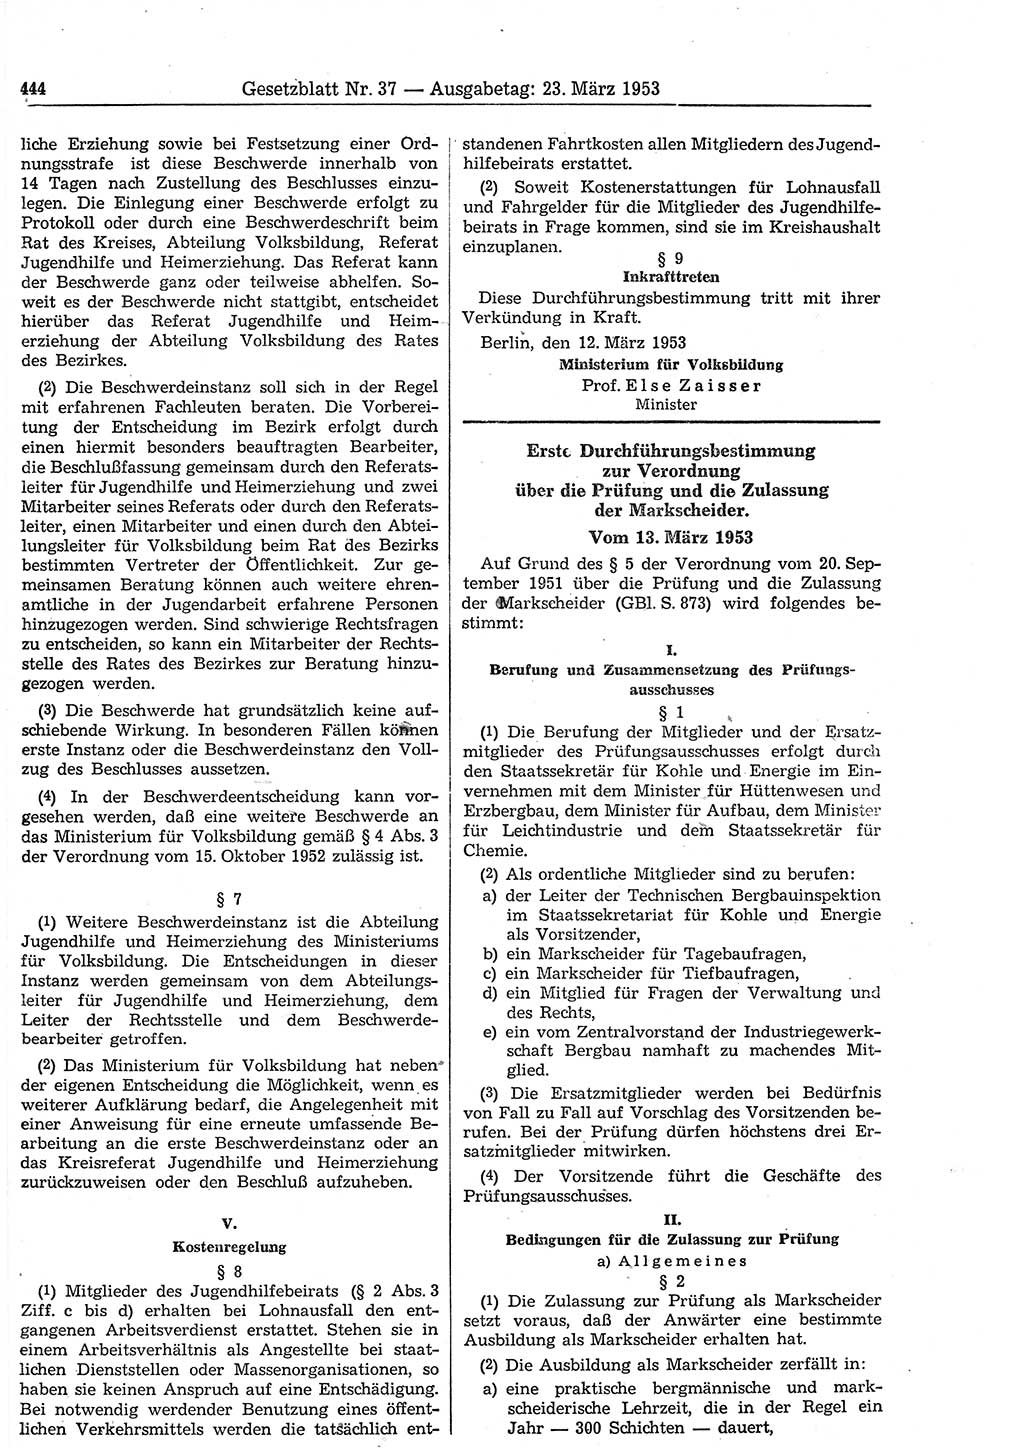 Gesetzblatt (GBl.) der Deutschen Demokratischen Republik (DDR) 1953, Seite 444 (GBl. DDR 1953, S. 444)